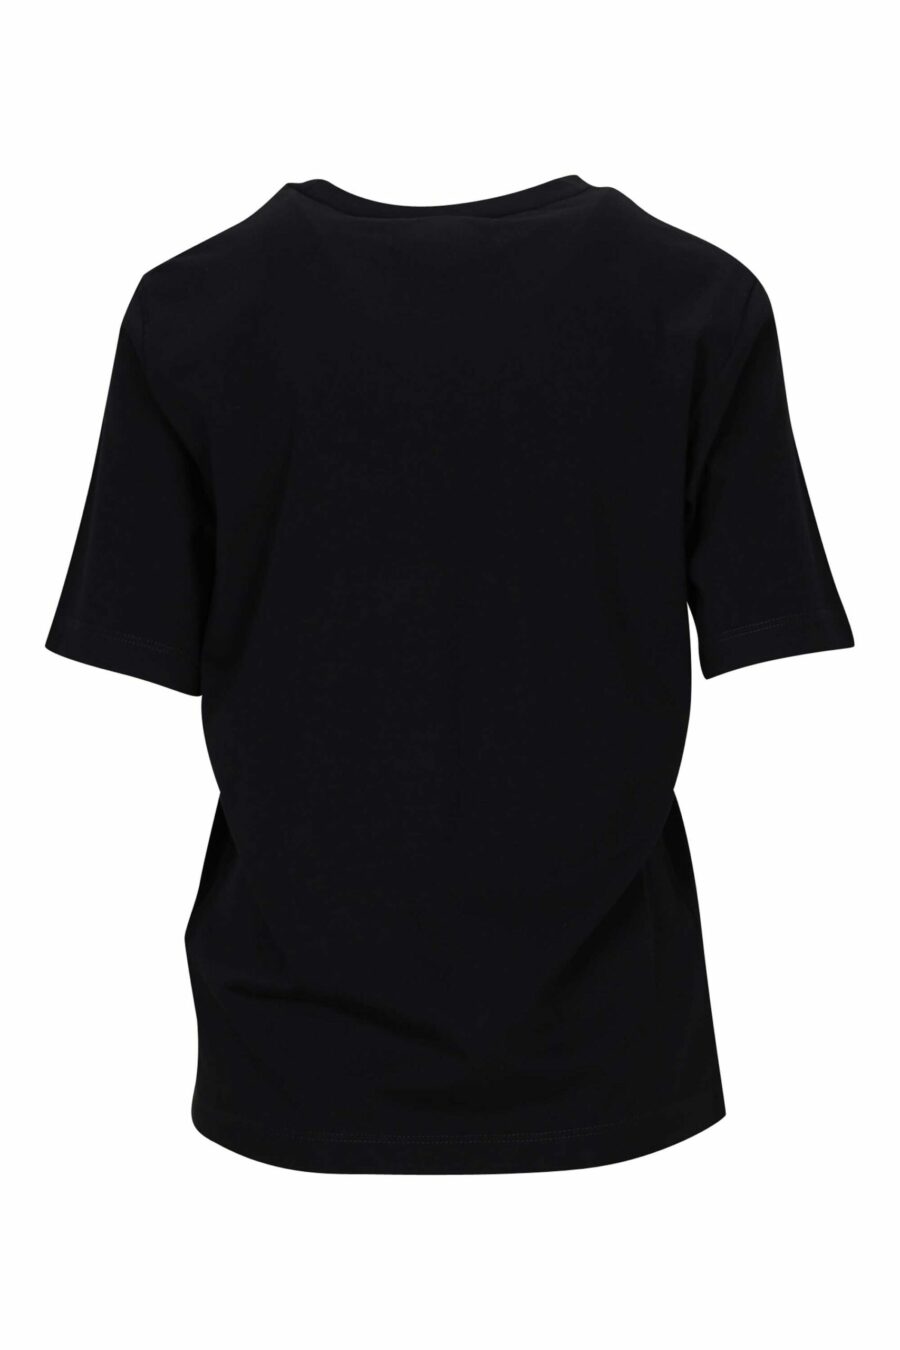 T-shirt preta com logótipo neon fúcsia esbatido - 8054148406530 1 à escala